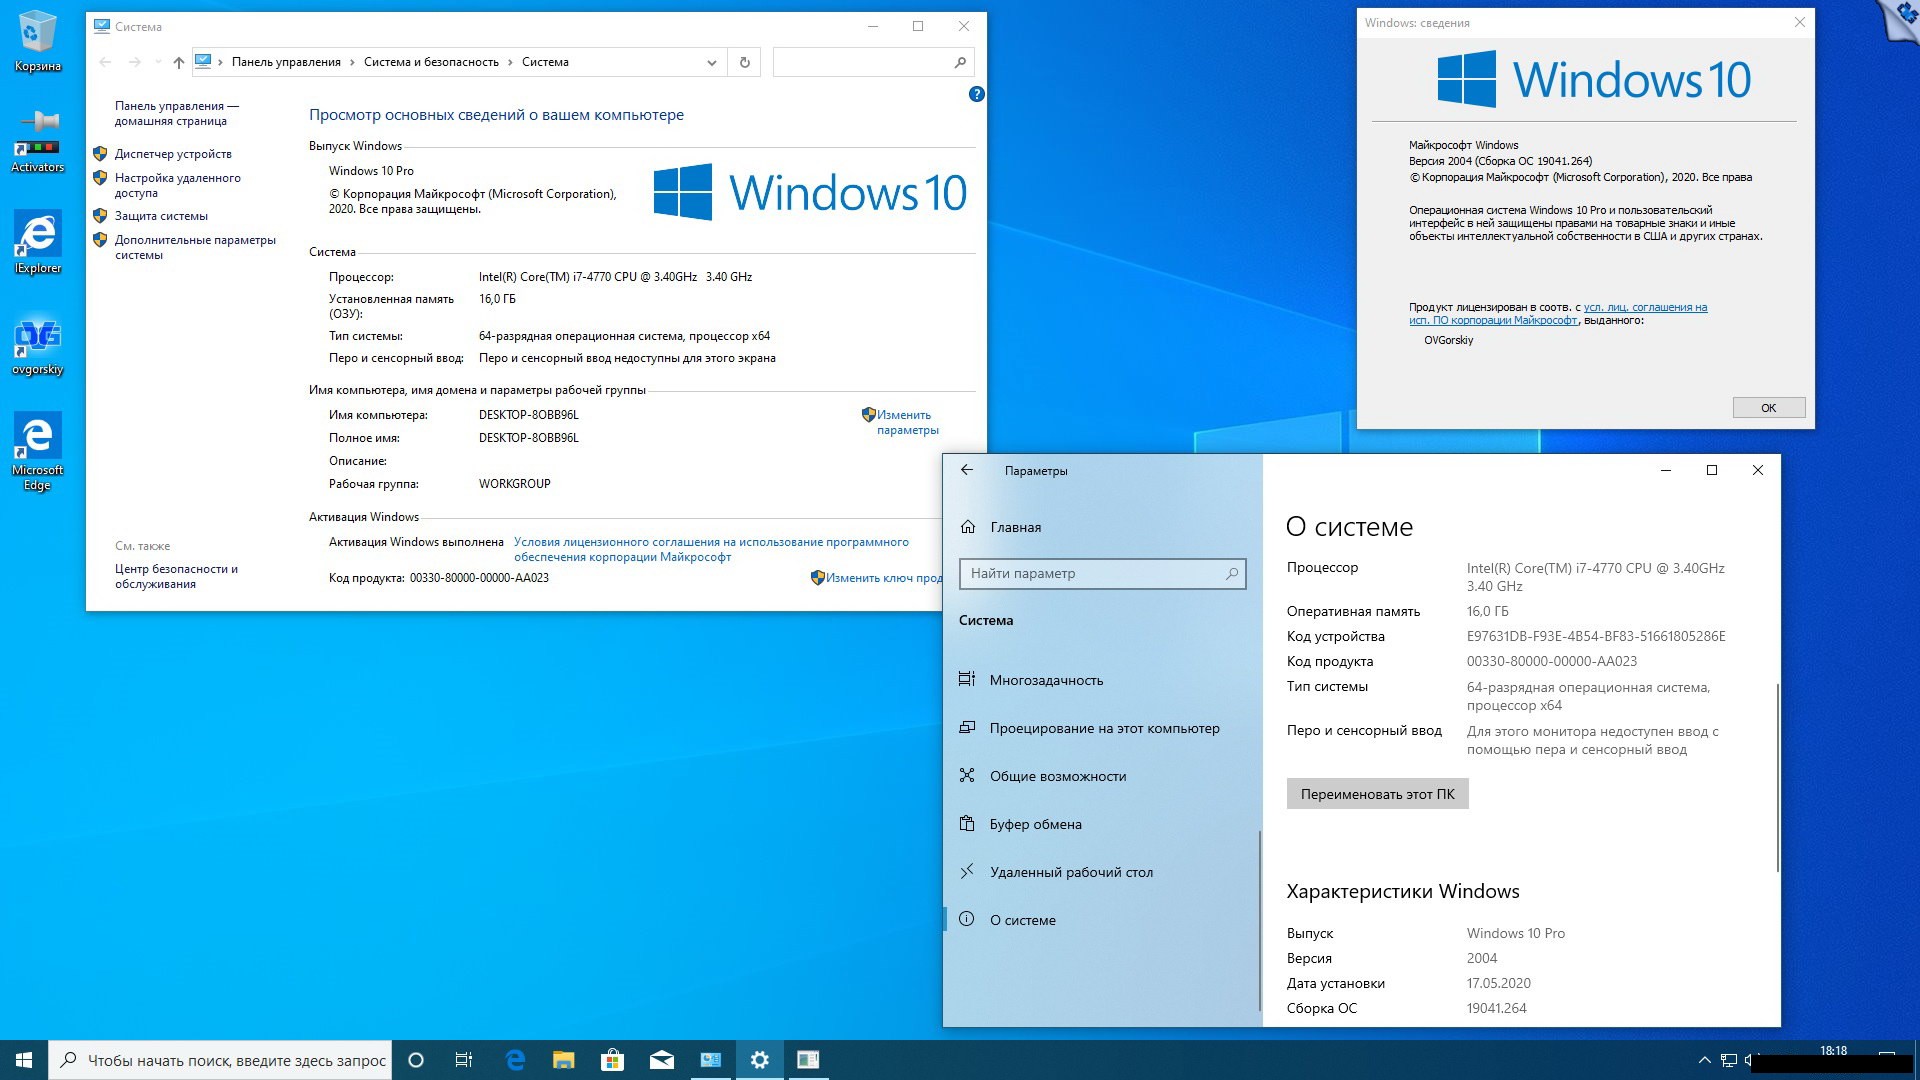 Виндовс 10 2004. Виндовс 8.1 embedded industry Pro. Windows 10 professional VL x86-x64 20h2 ru by OVGORSKIY октябрь 2020. Чся виндовсс 10. Upd 10